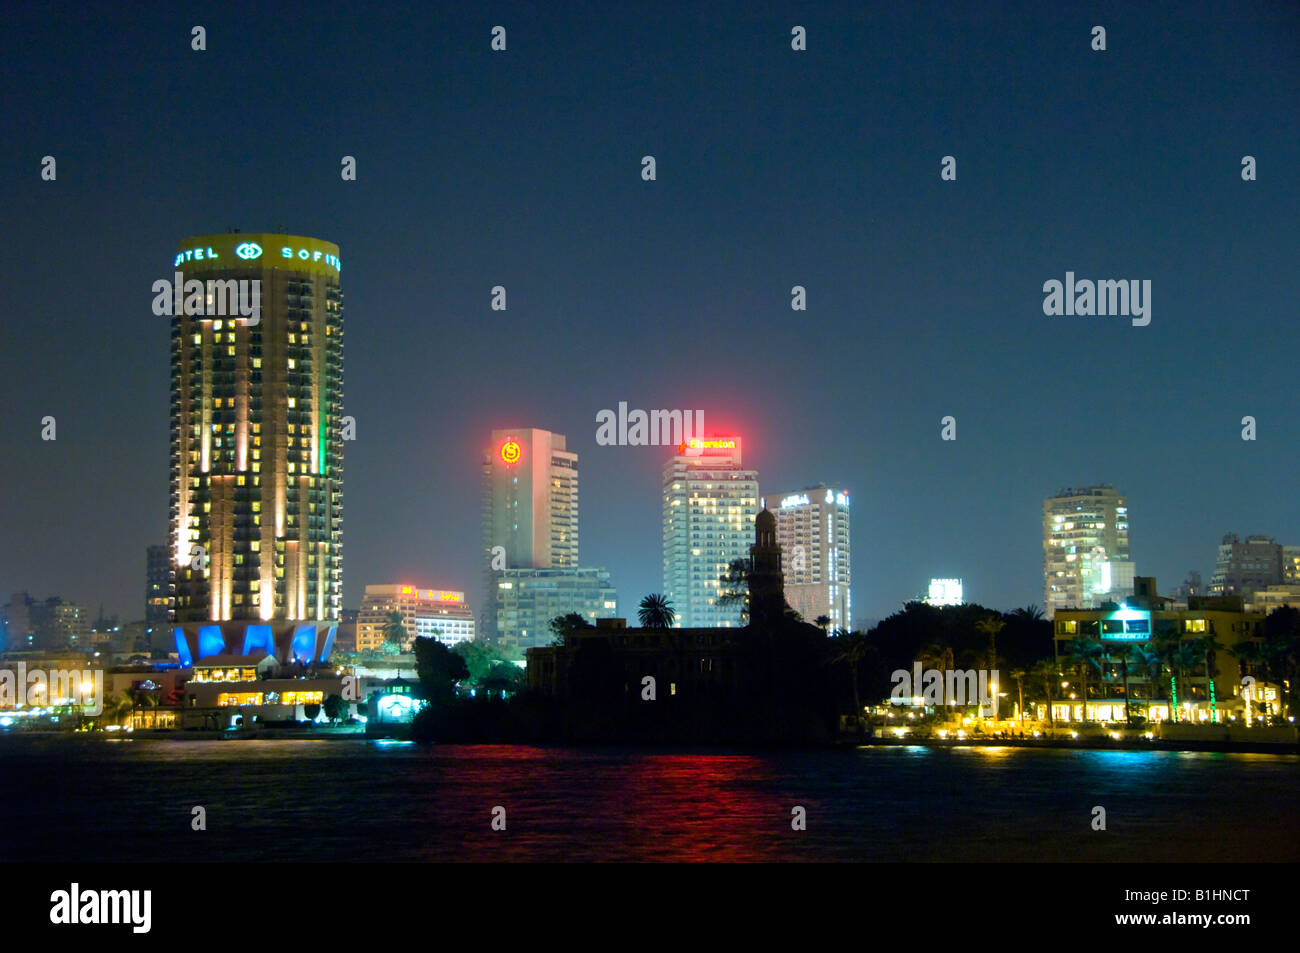 El Cairo, Egipto skyline con altos edificios iluminados al atardecer Foto de stock